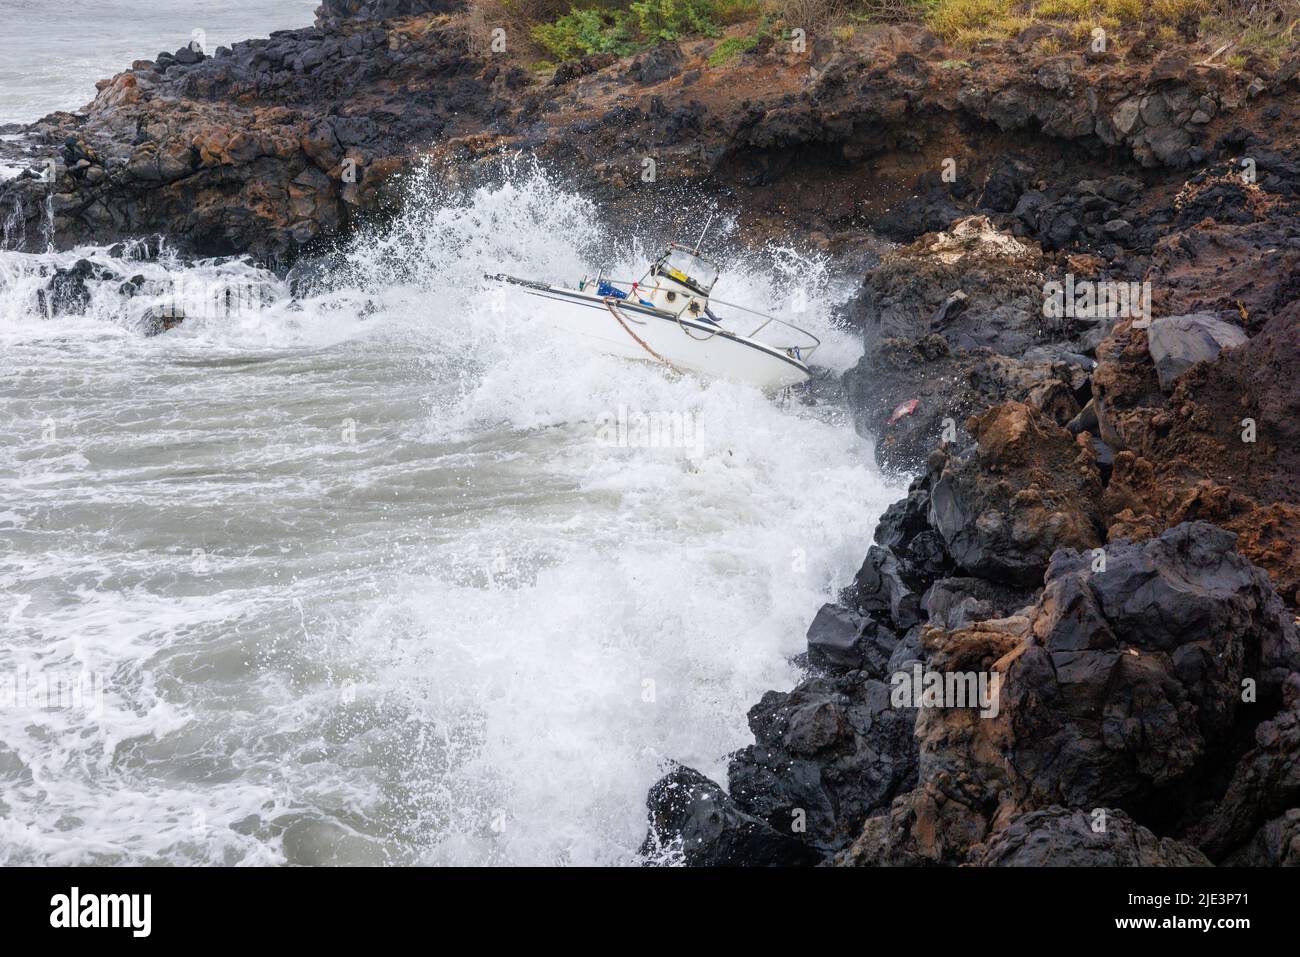 La barca si schiantò sulla riva del mare dopo una forte tempesta, Maui, Hawaii, USA. Foto Stock